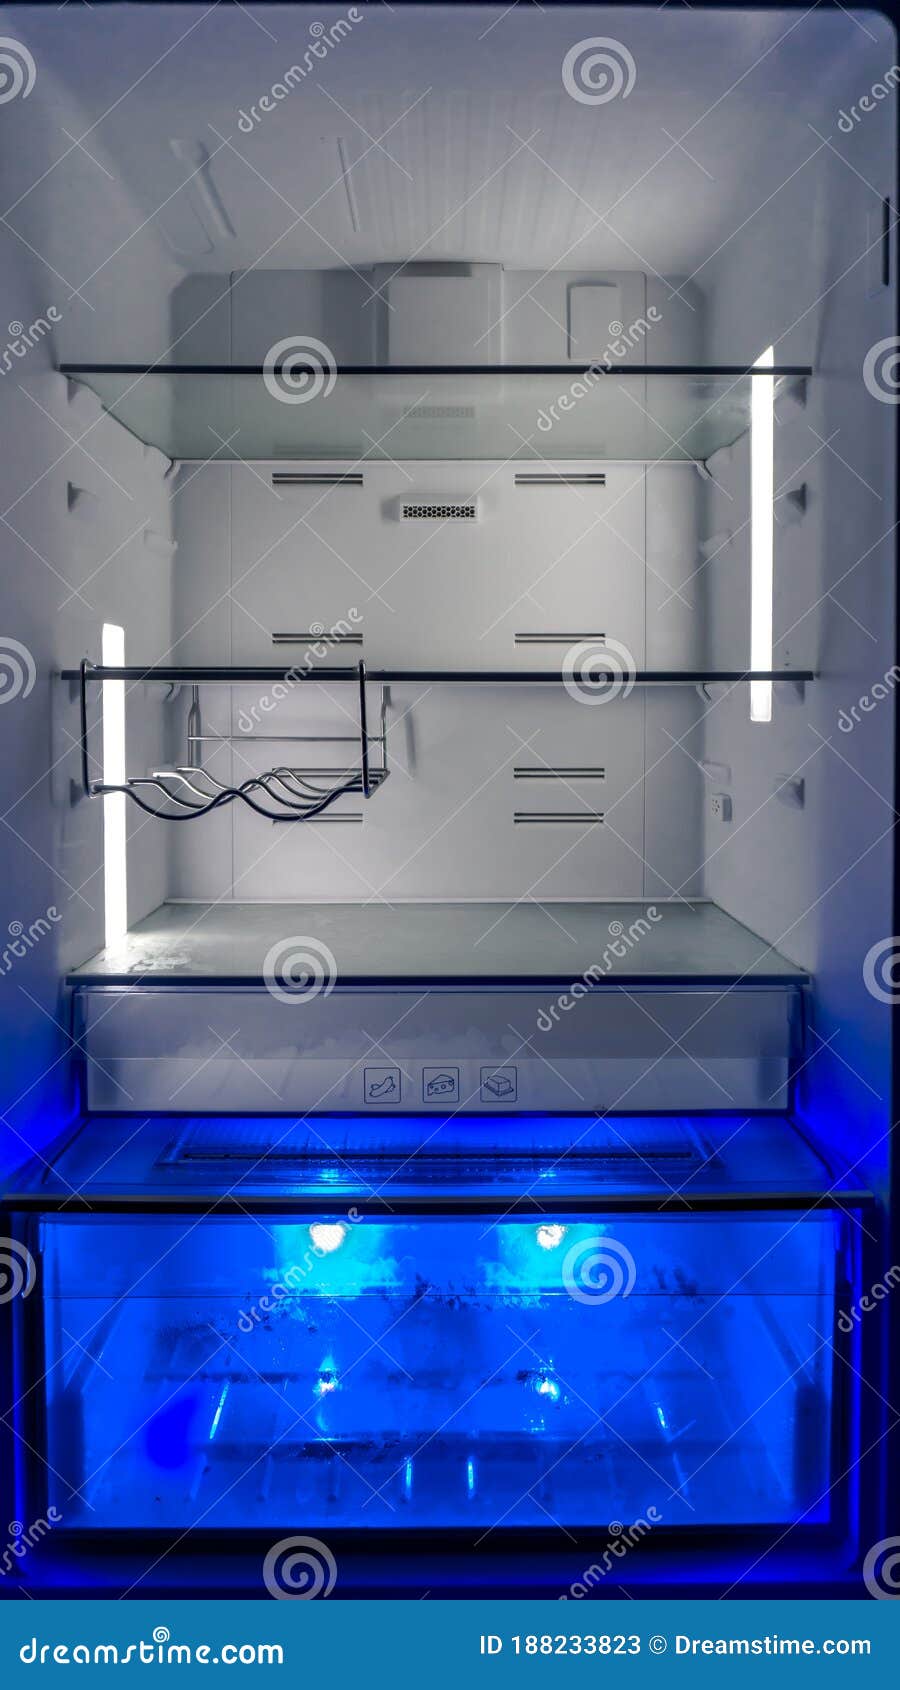 Leere Open Kühlschrank Mit Regalen Und Blaues Licht UVfach Für Frische  Lebensmittel. Moderner Kühlschrank.. Stockbild - Bild von gemüse, blau:  188233823